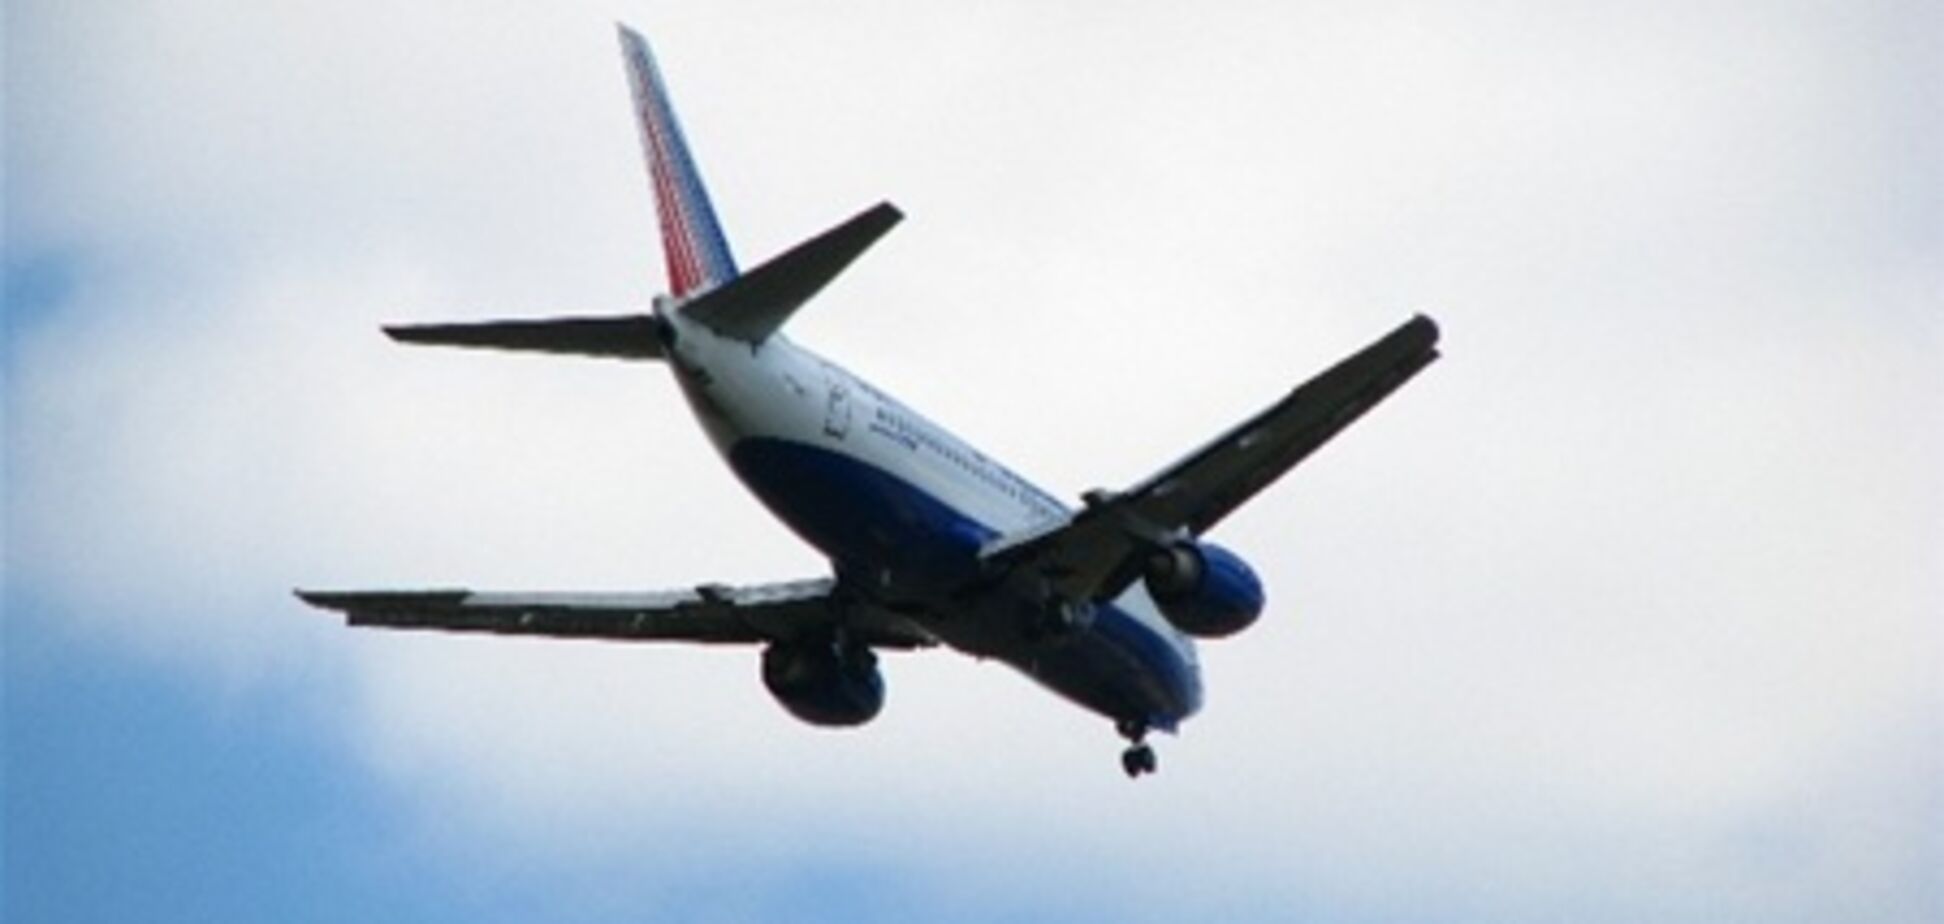 Boeing с 56 людьми полчаса кружил над Одессой: пилоты считали, что шасси не работает